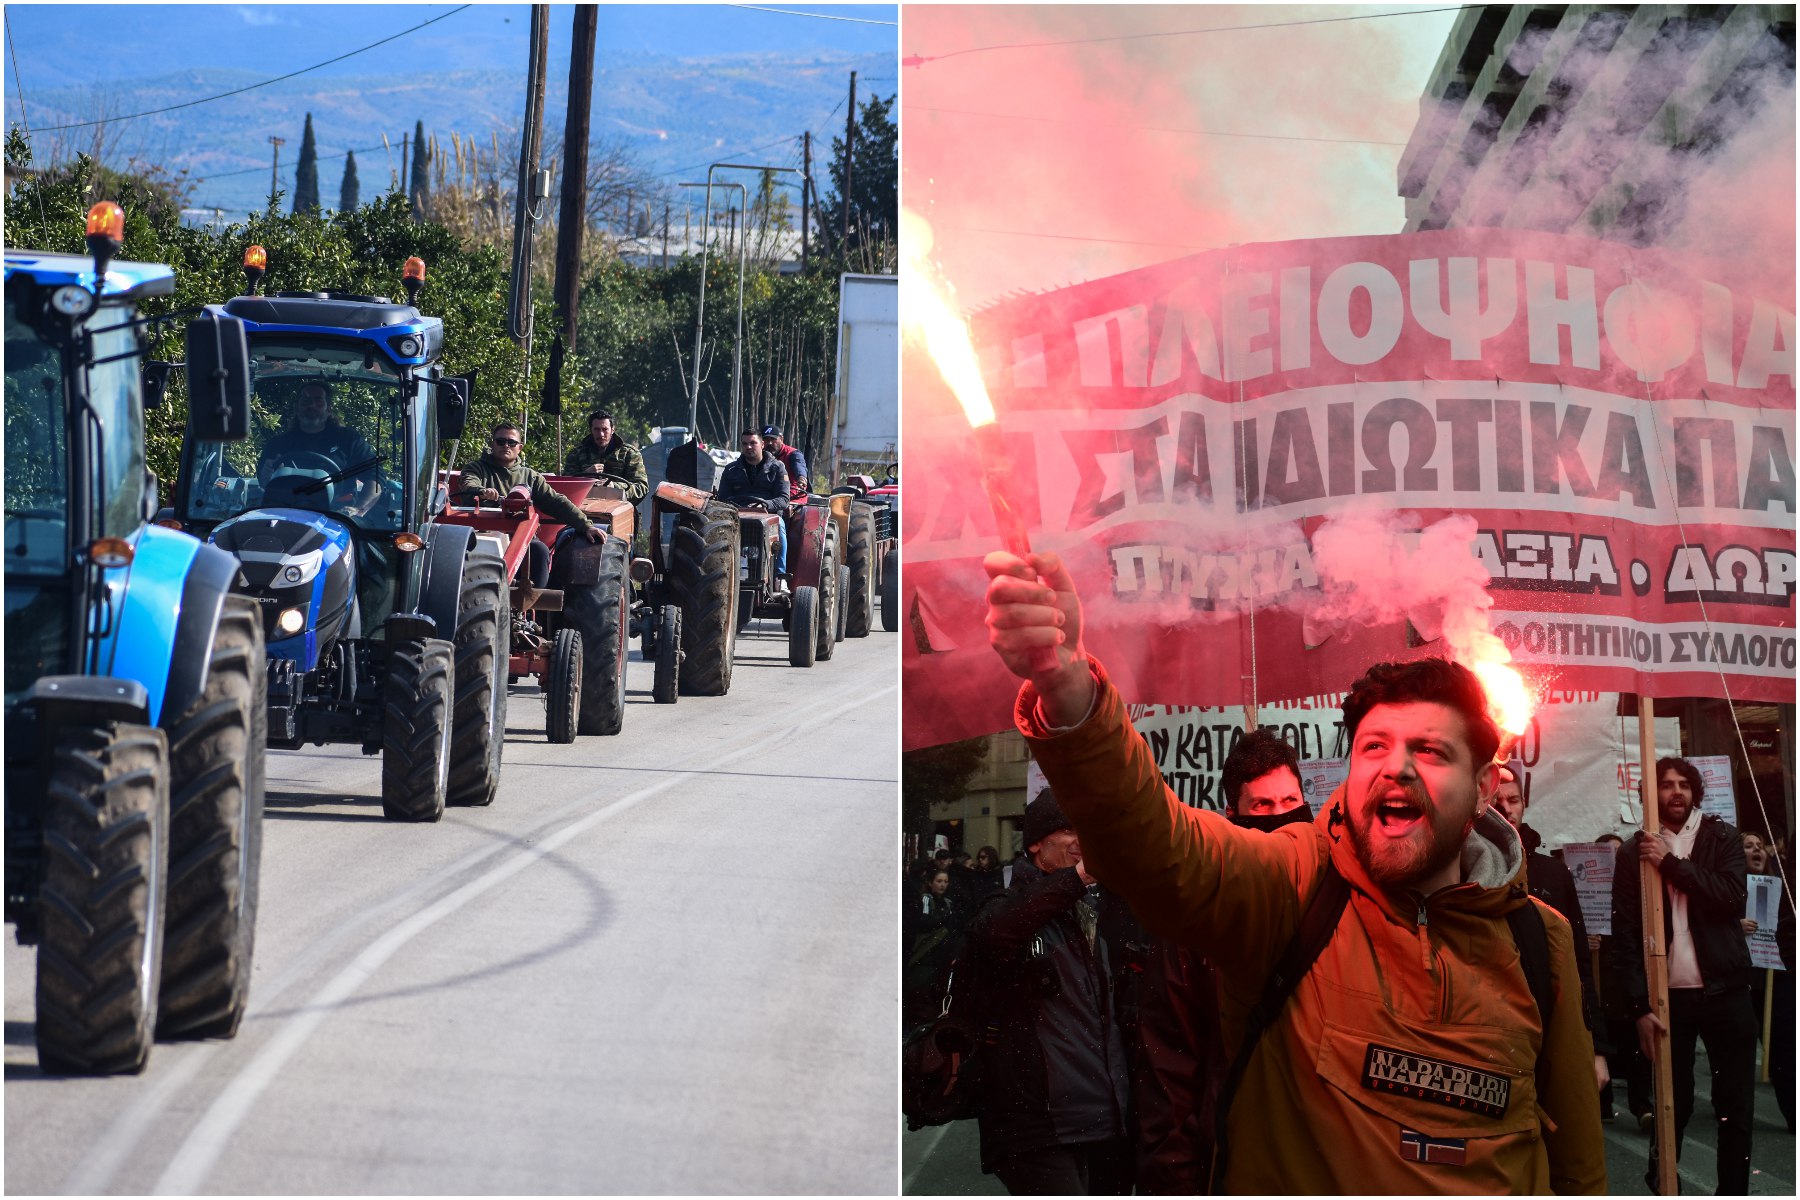 Αμηχανία από την κυβέρνηση για τα συλλαλητήρια της οργής - Αγρότες και φοιτητές σε θέσεις μάχης